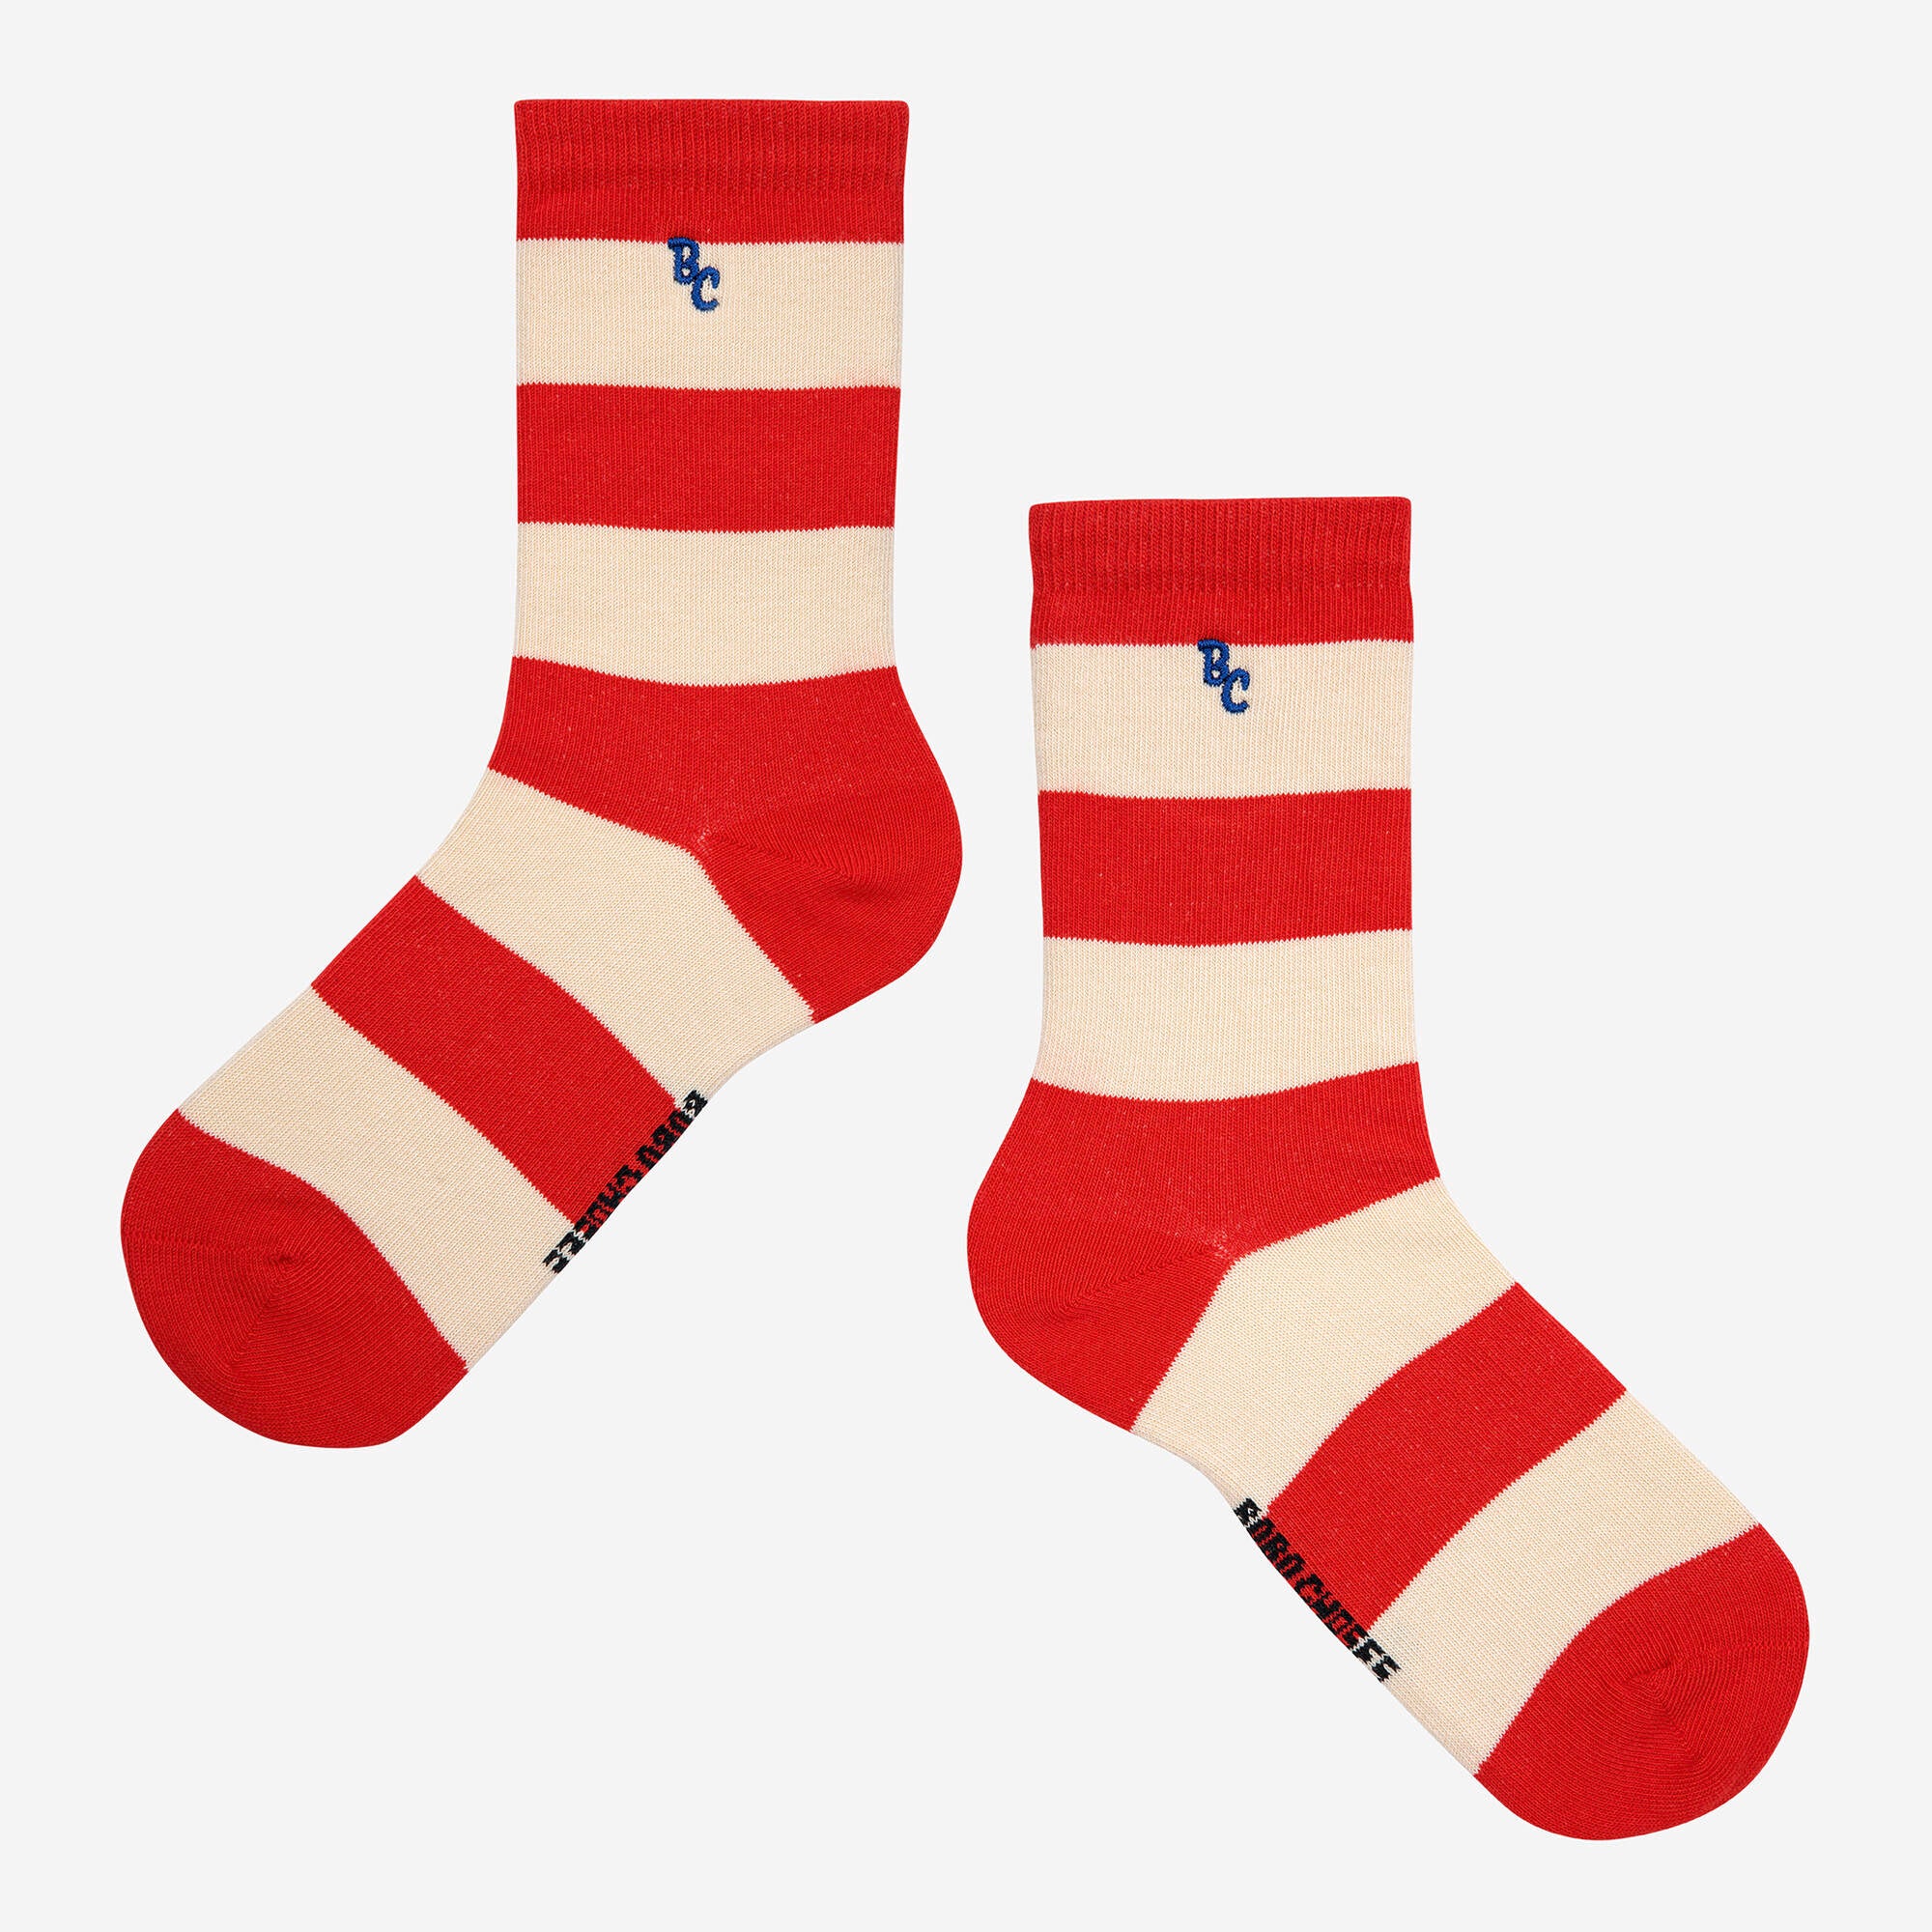 Boys & Girls Red Cotton Socks(2 Pack)